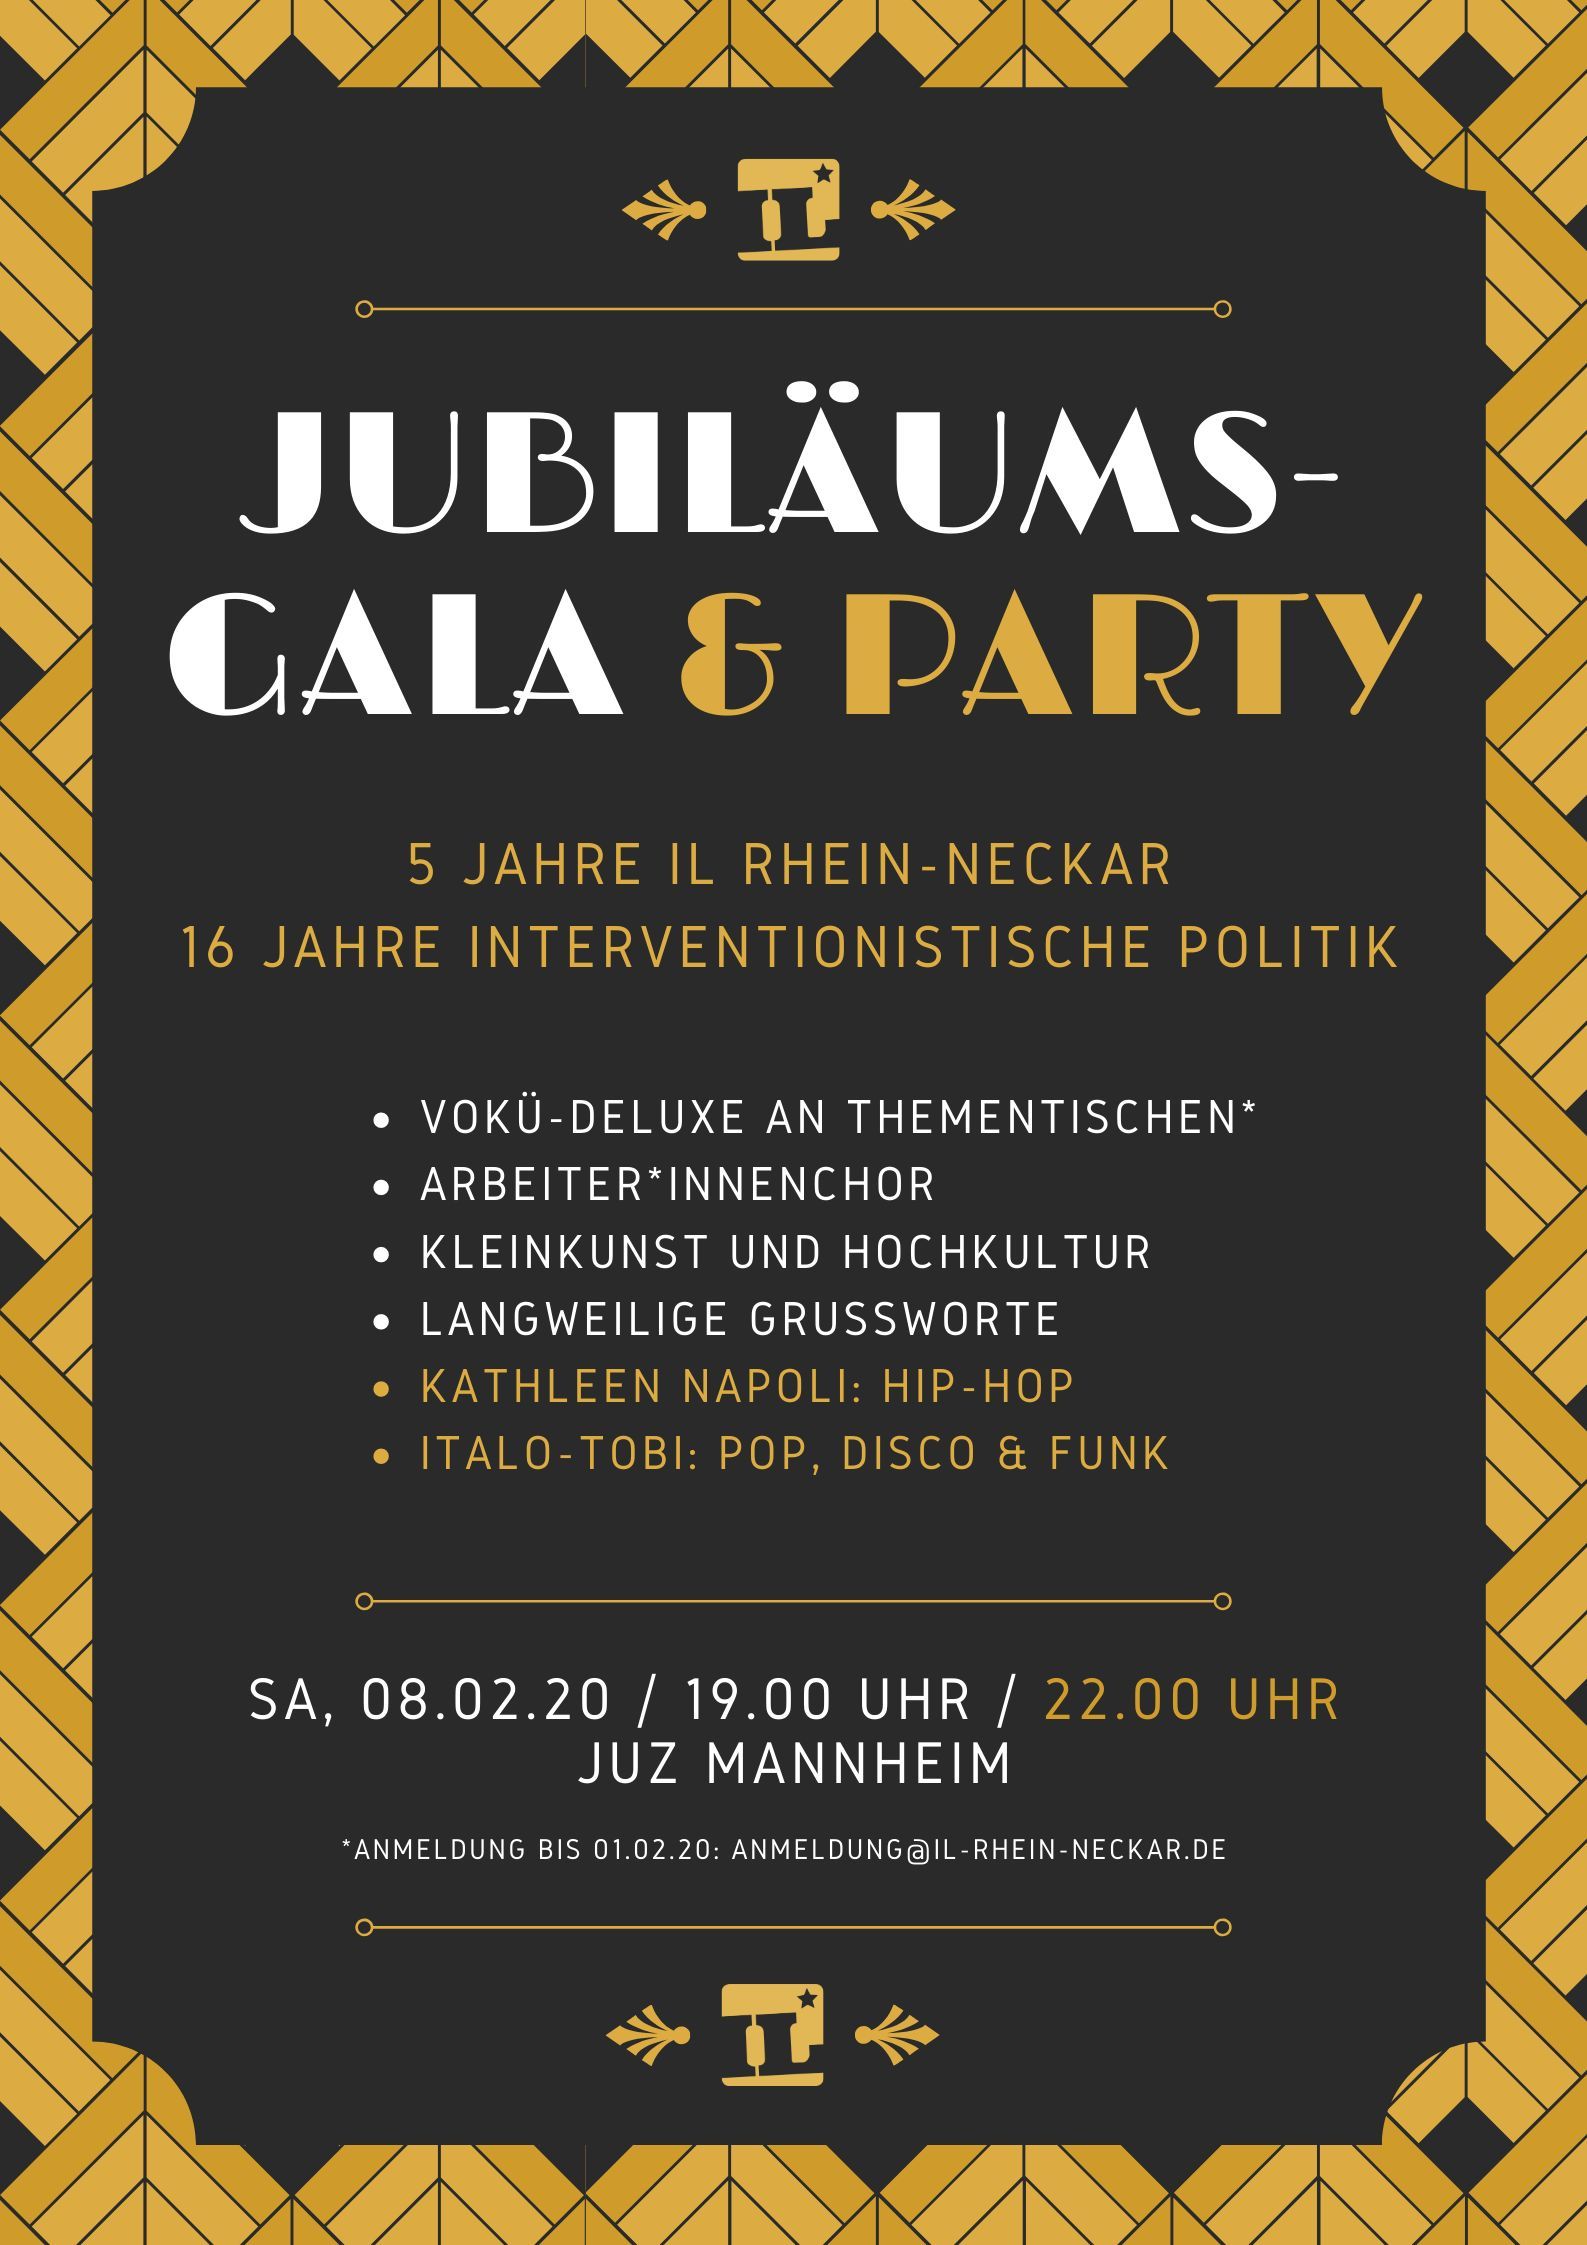 Jubiläumsgala und Party - 5 Jahre IL Rhein-Neckar 16 Jahre interventionistische Politik - Samstag 8. Februar 2020 im JUZ Mannheim